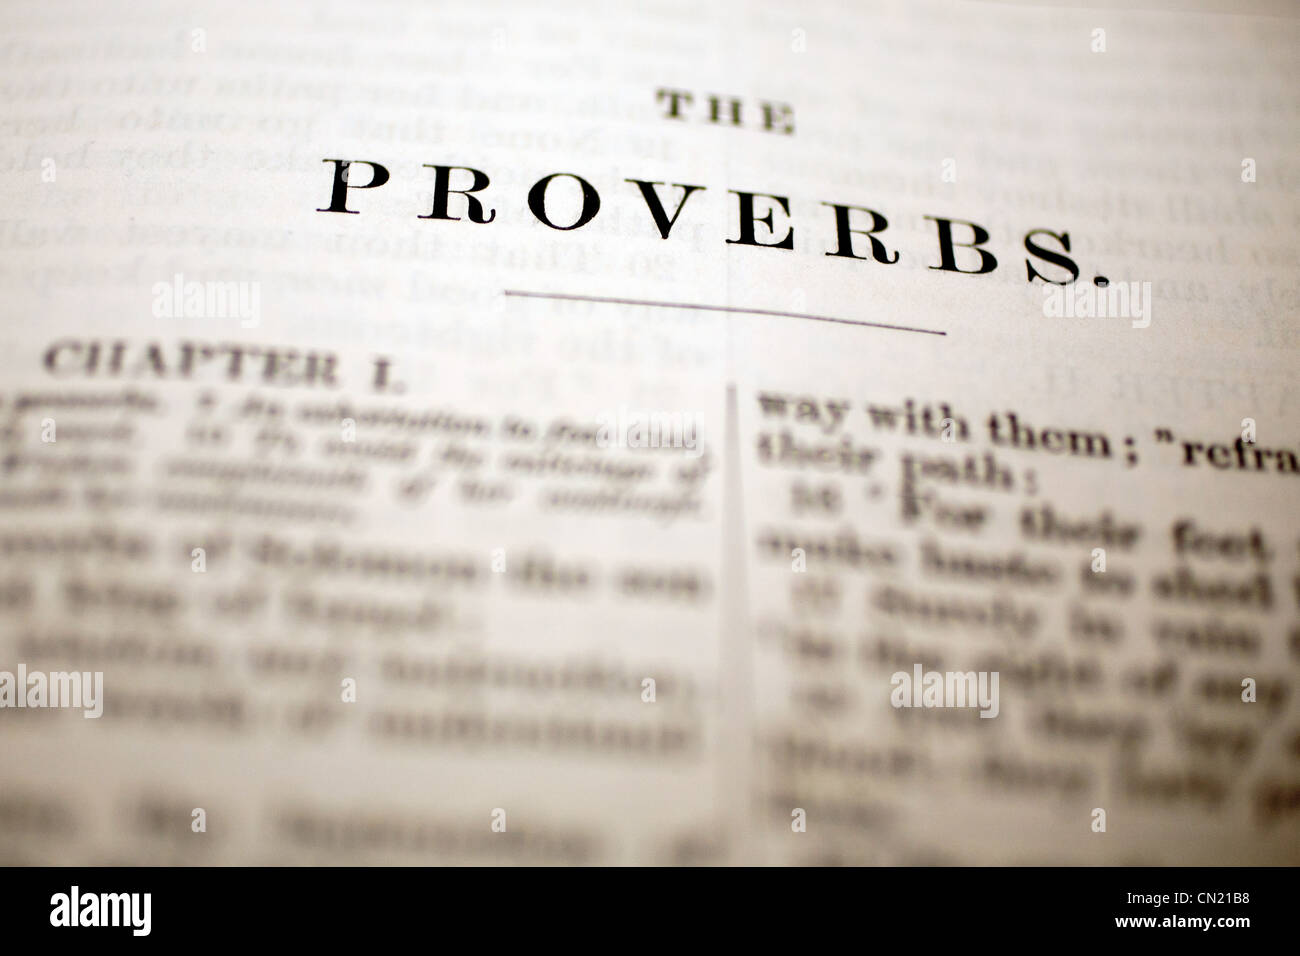 Das Buch Der Spruche Bibel Uberschrift Stockfotografie Alamy